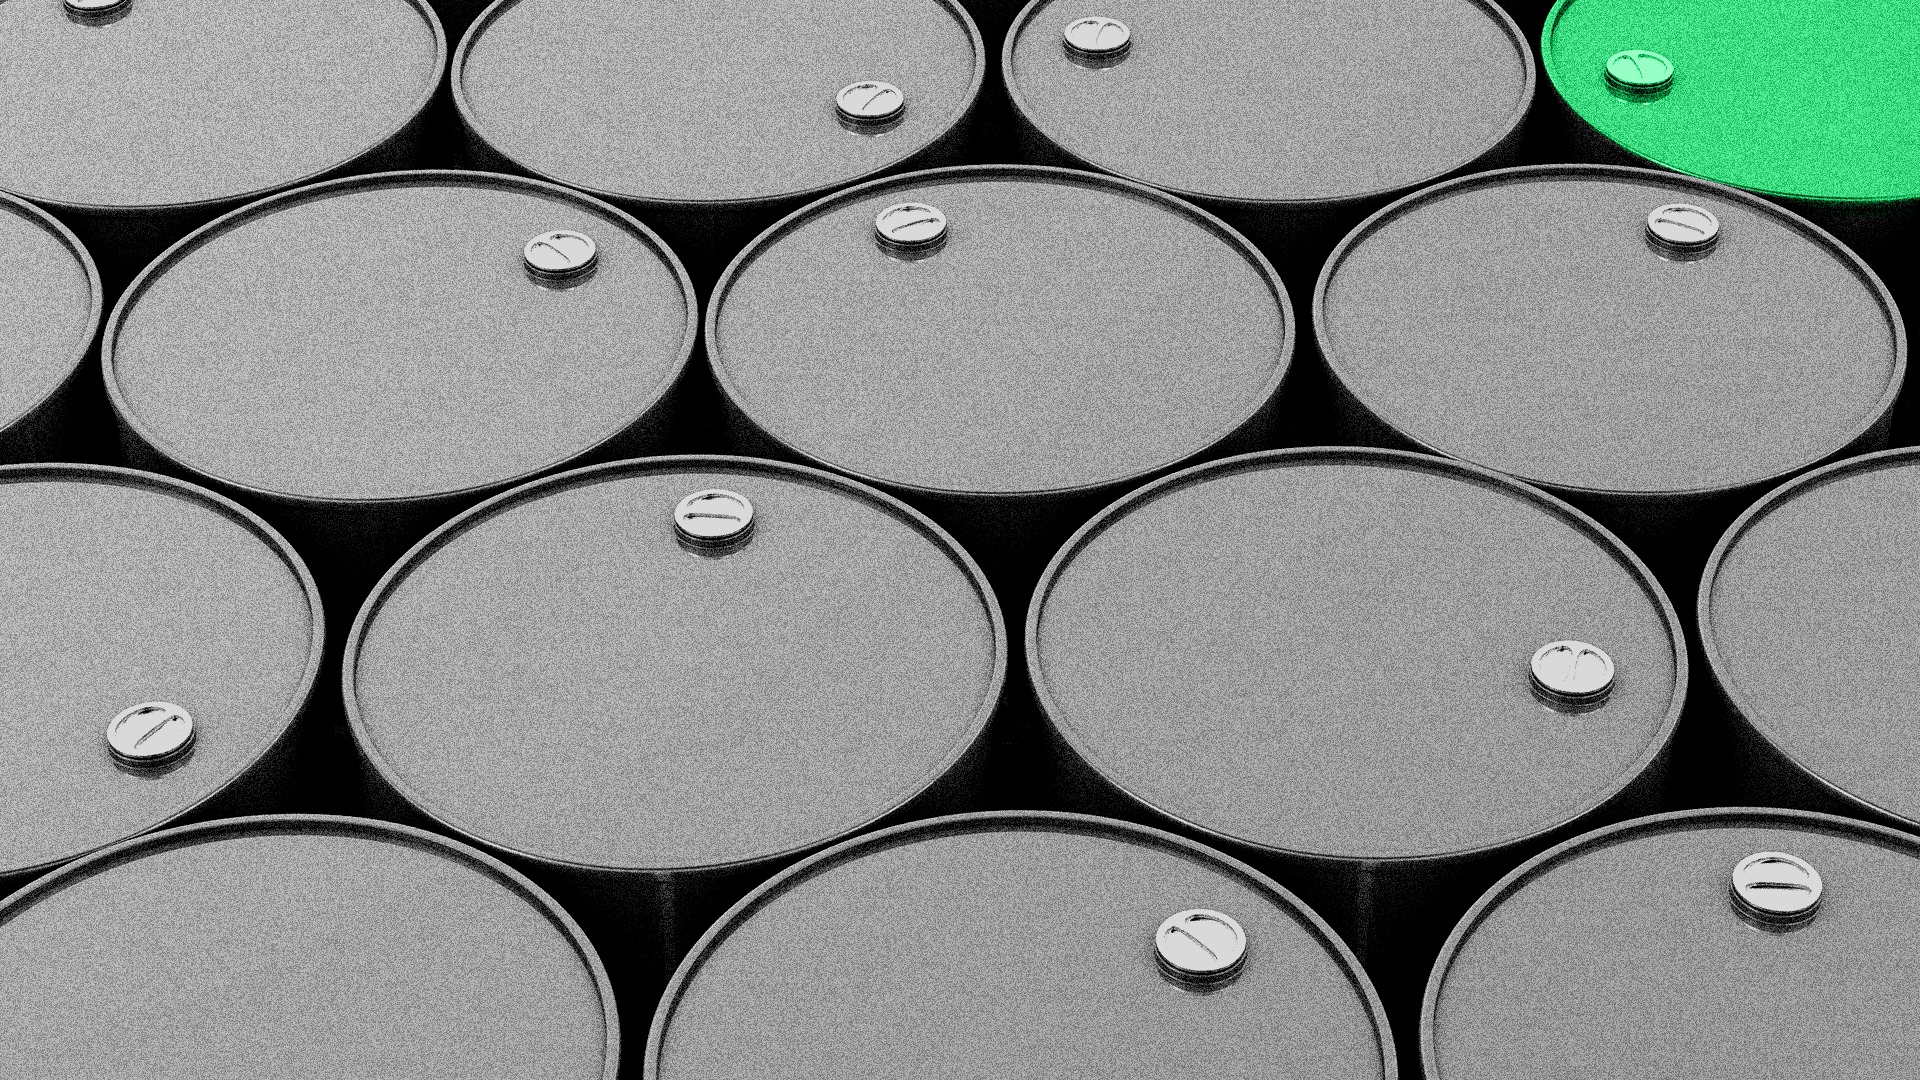 Illustration of barrels of oil